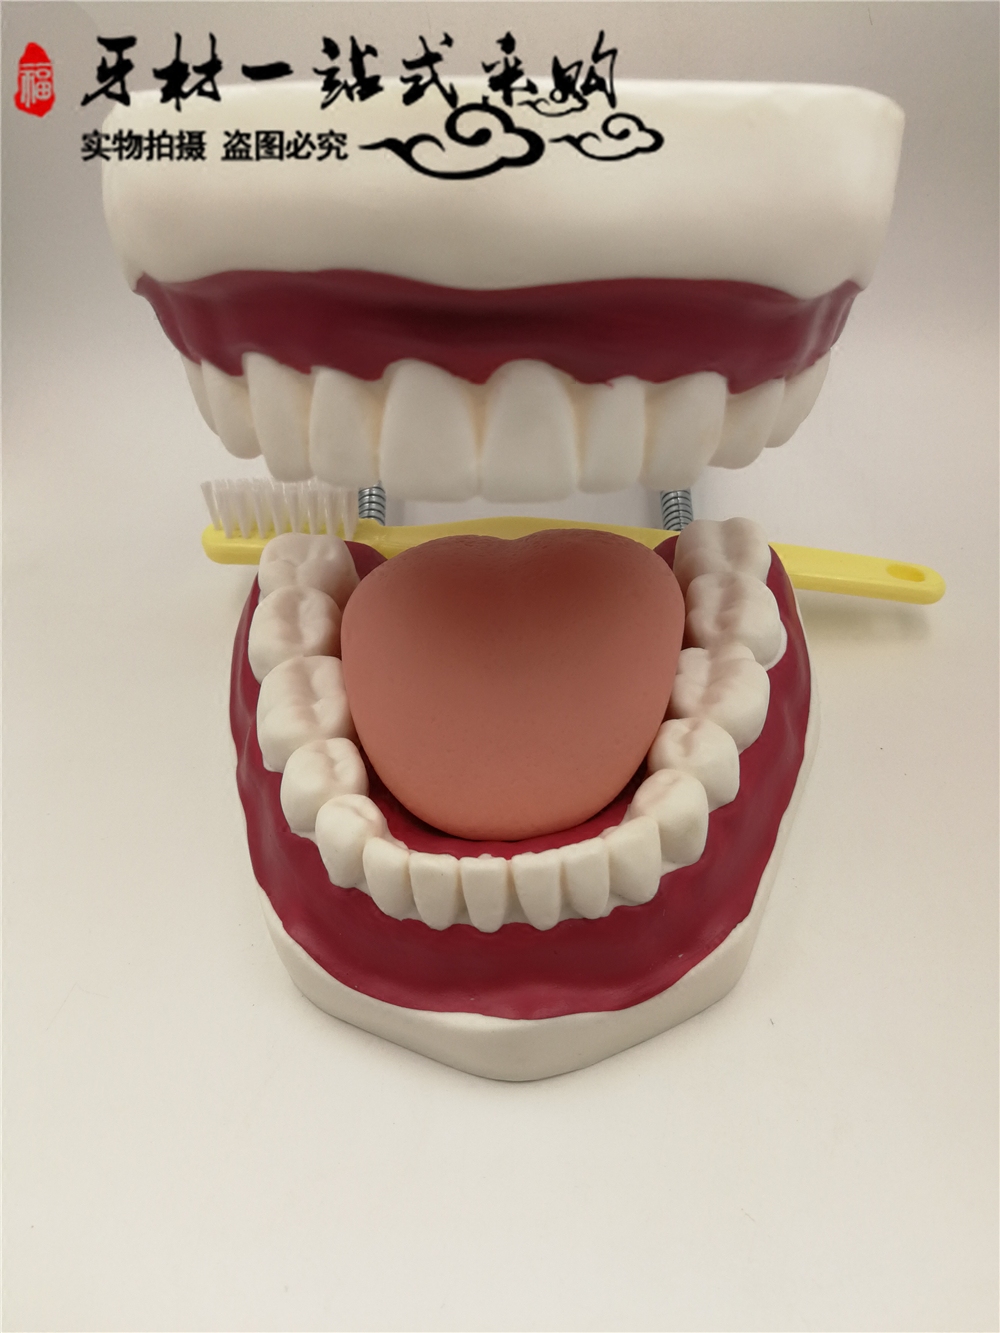 牙科材料 模型 教学模型 牙齿模型 大牙齿模型 带牙刷